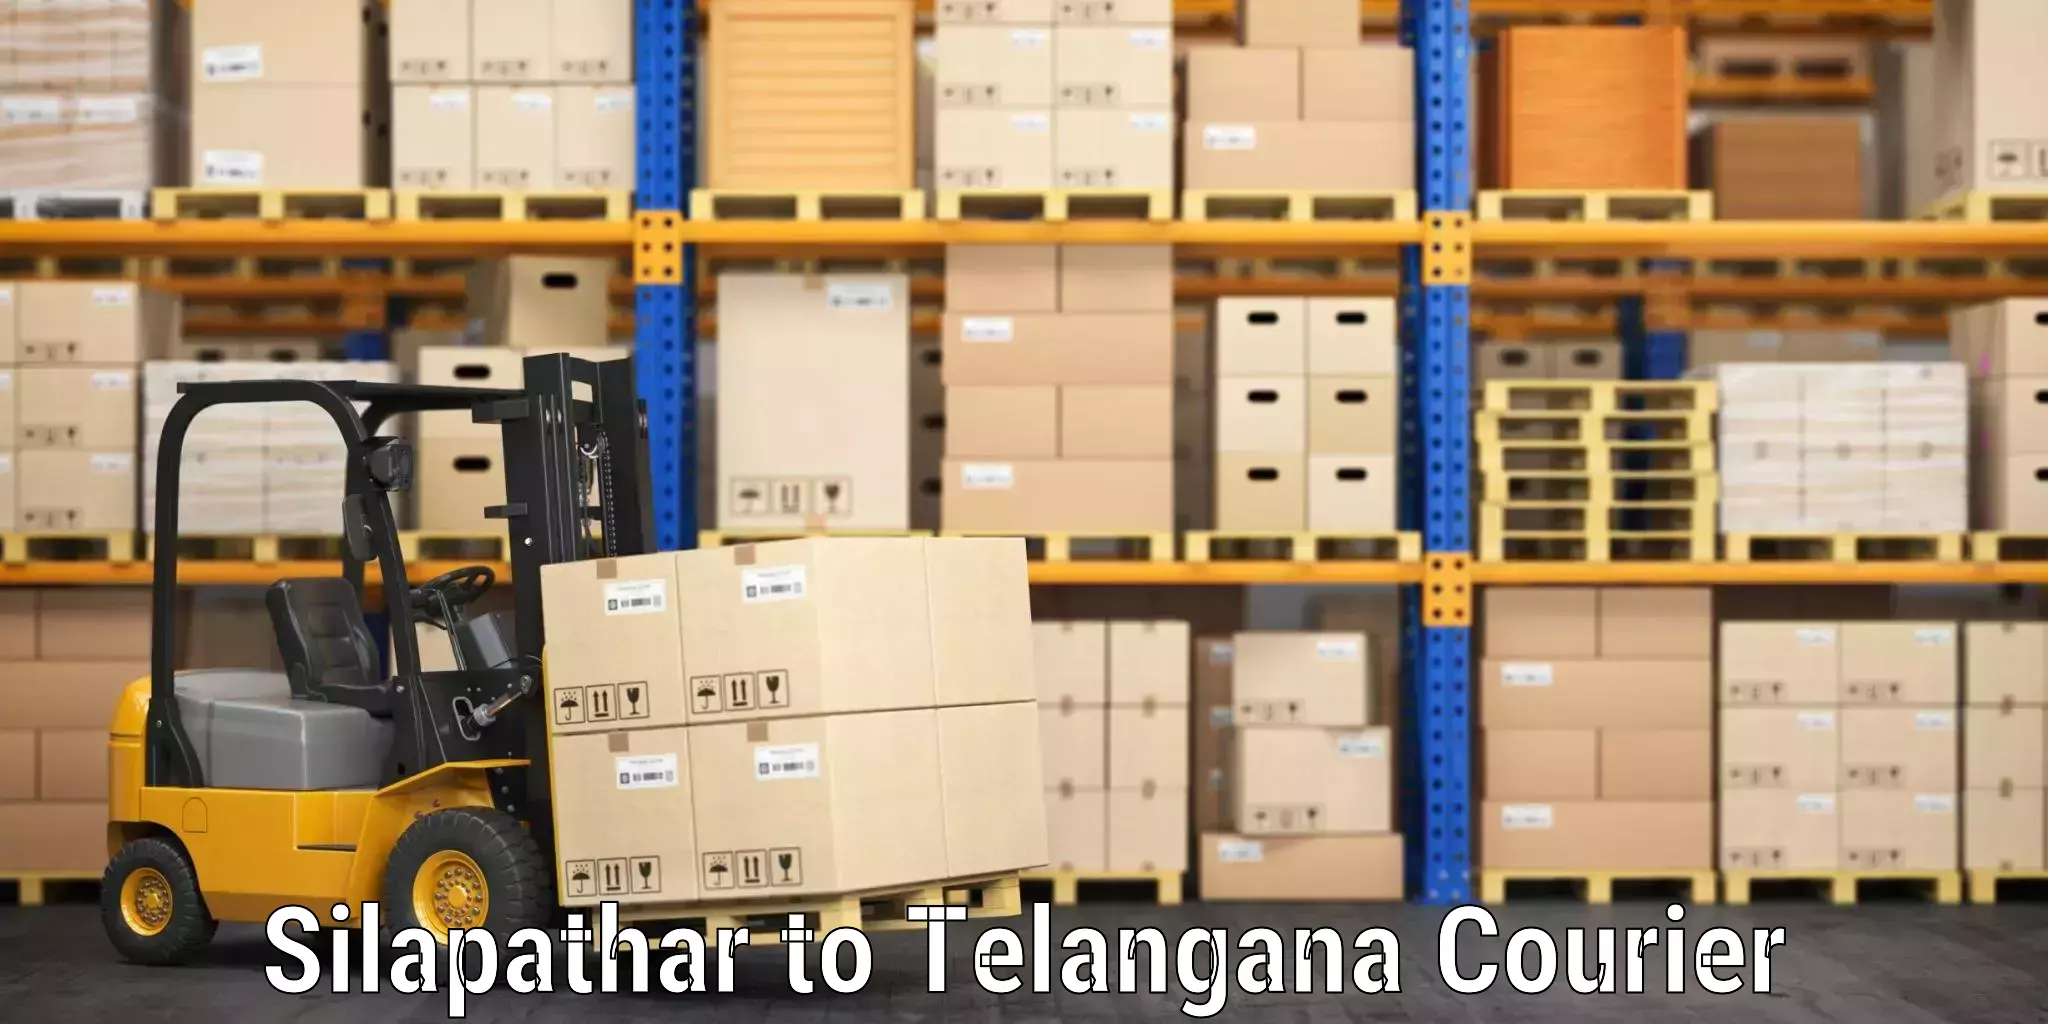 Baggage shipping rates calculator Silapathar to Gadwal